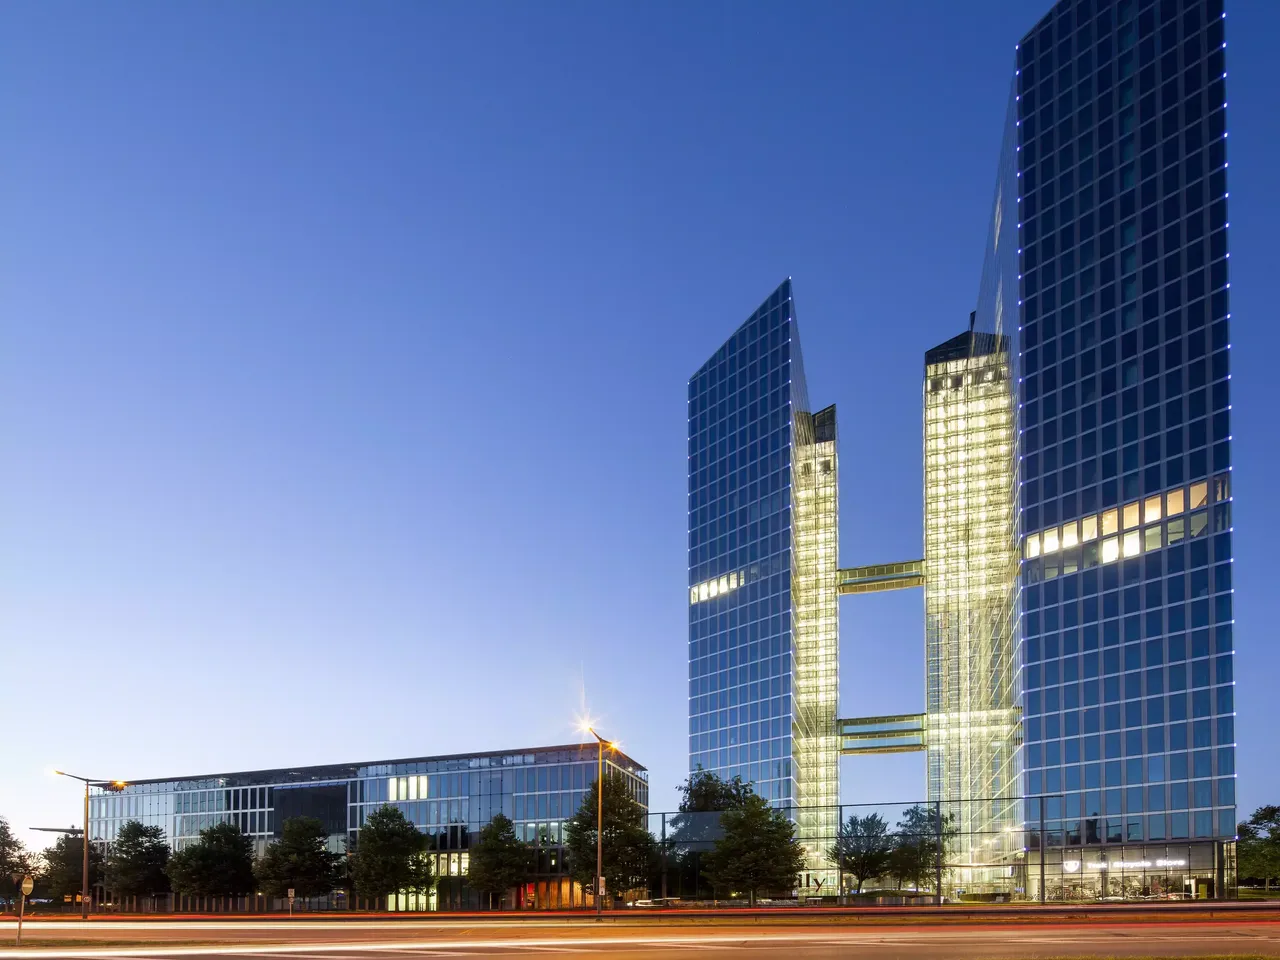 Außenansicht: Es wird die Fassade der hausInvest Immobilie Highlight Towers in München abgebildet